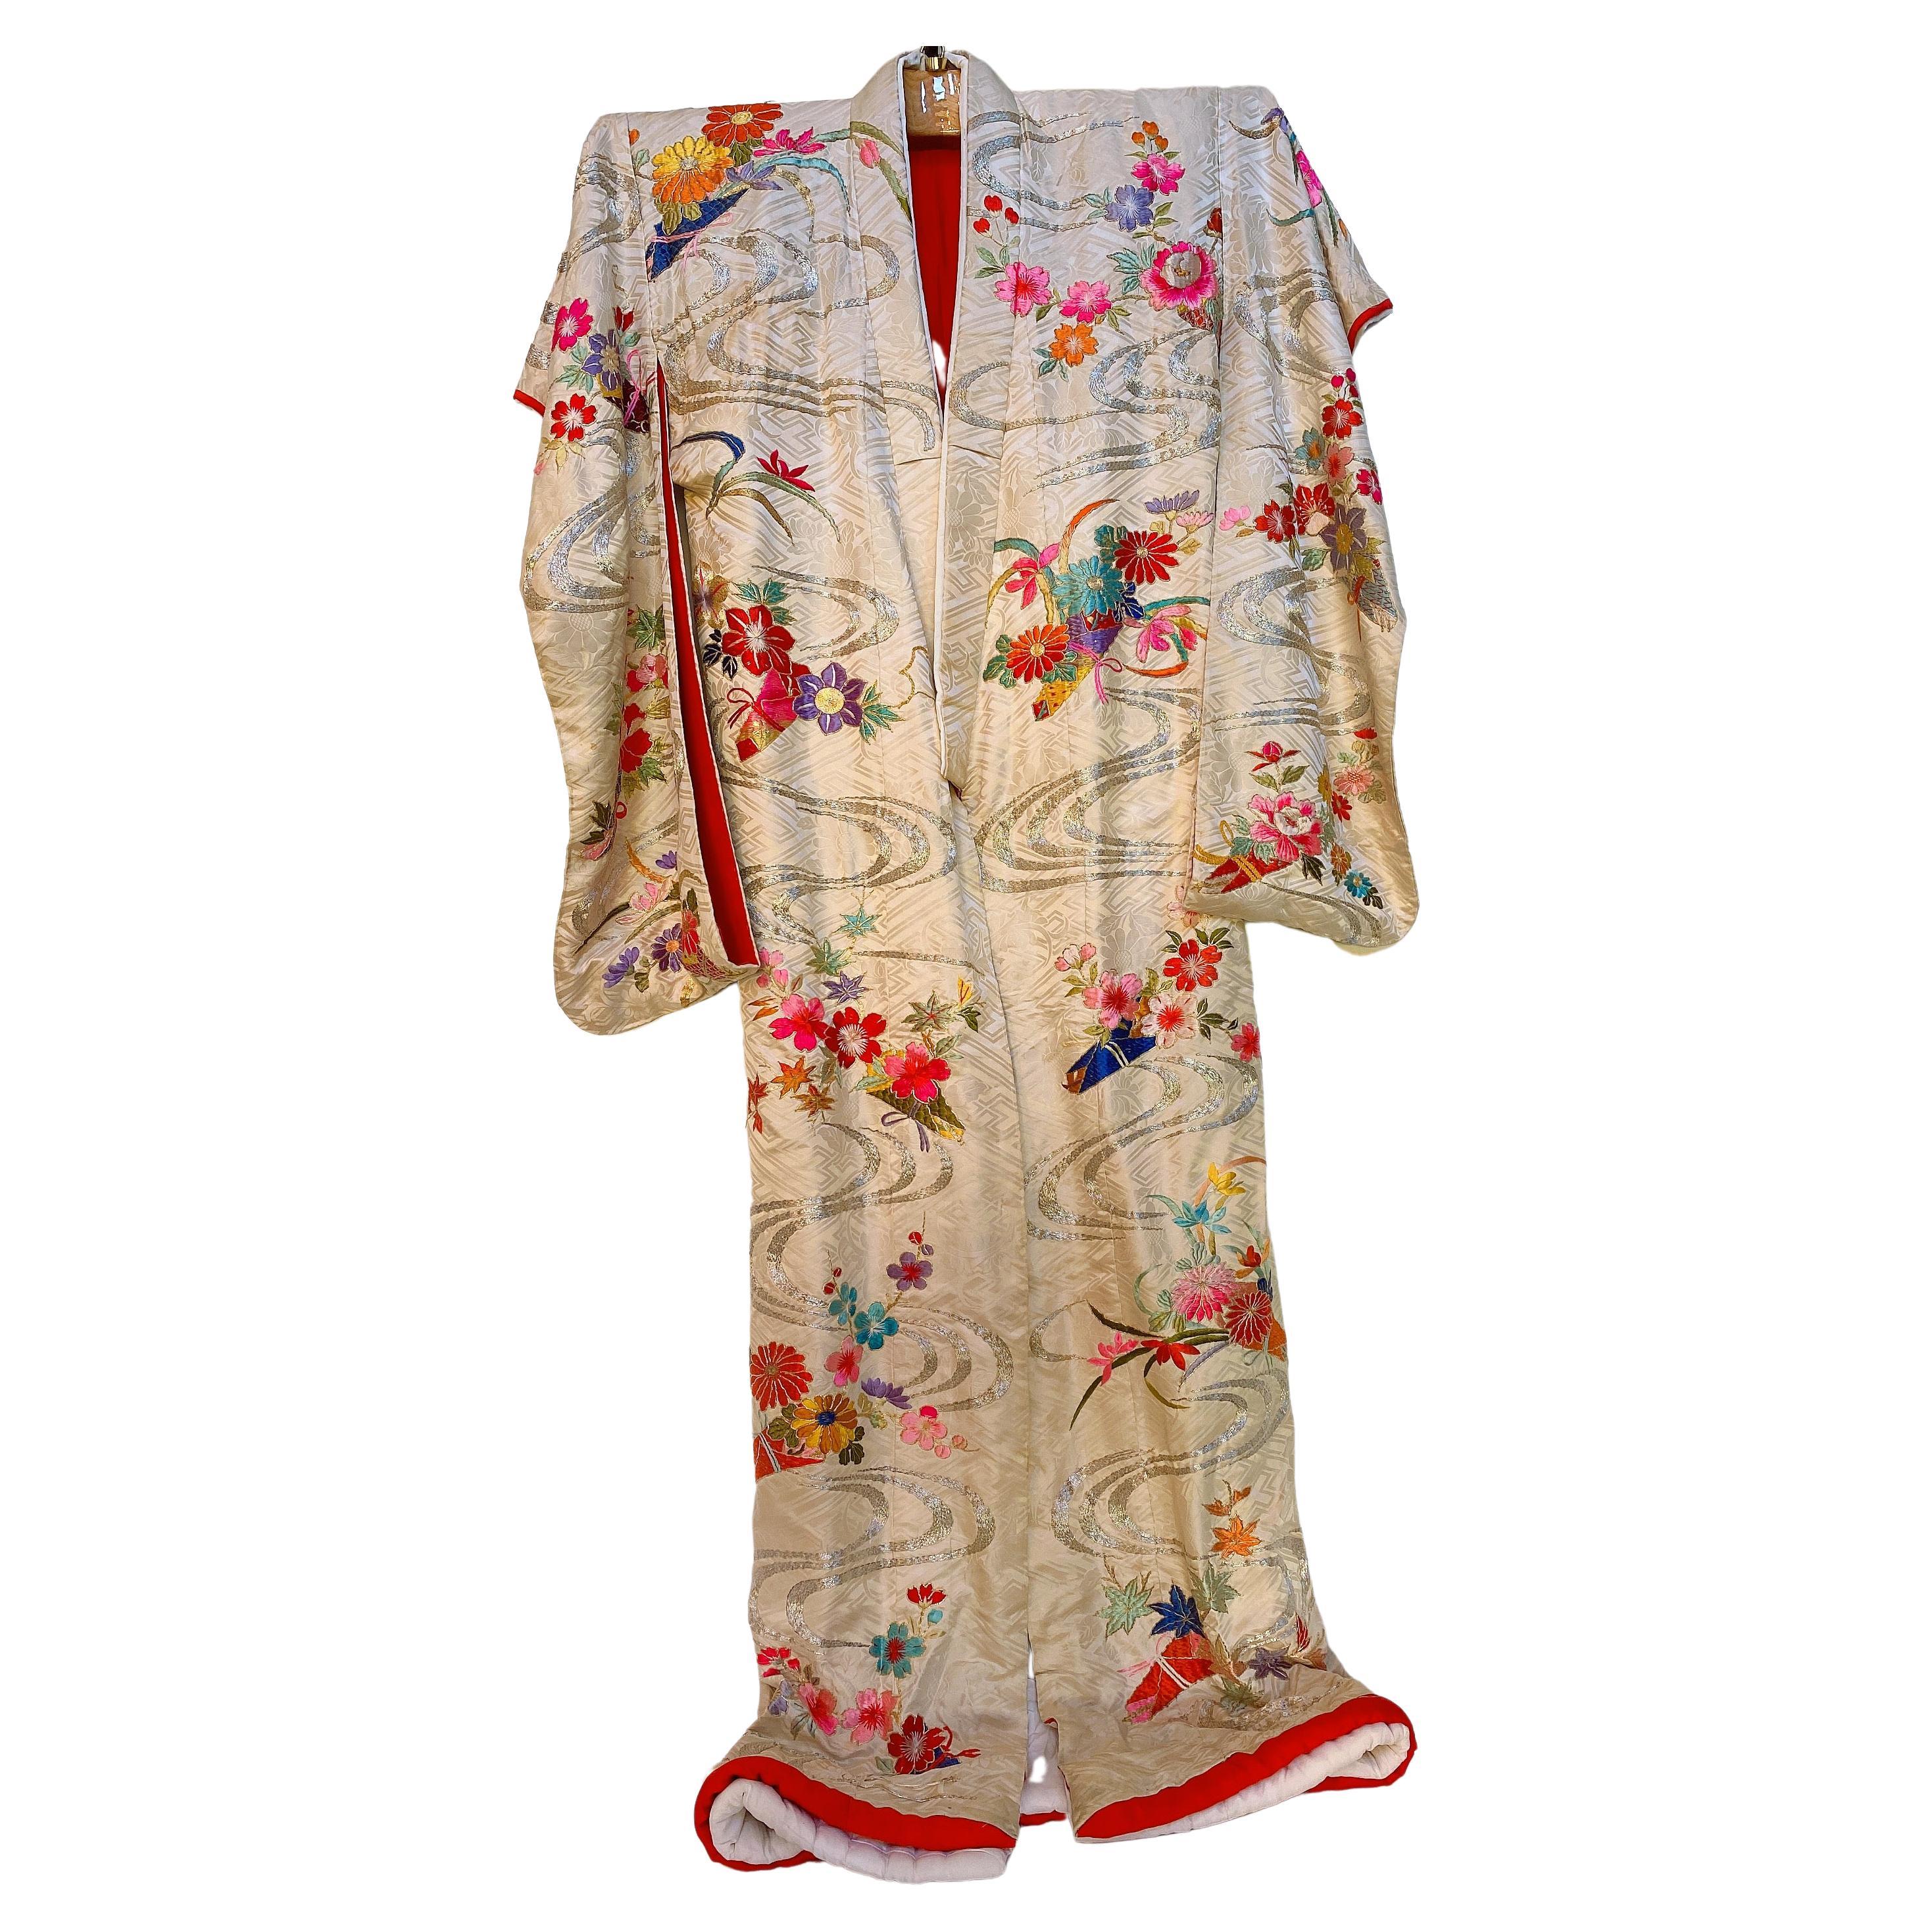 Kimono japonais rare et spectaculaire en soie brodée à la main